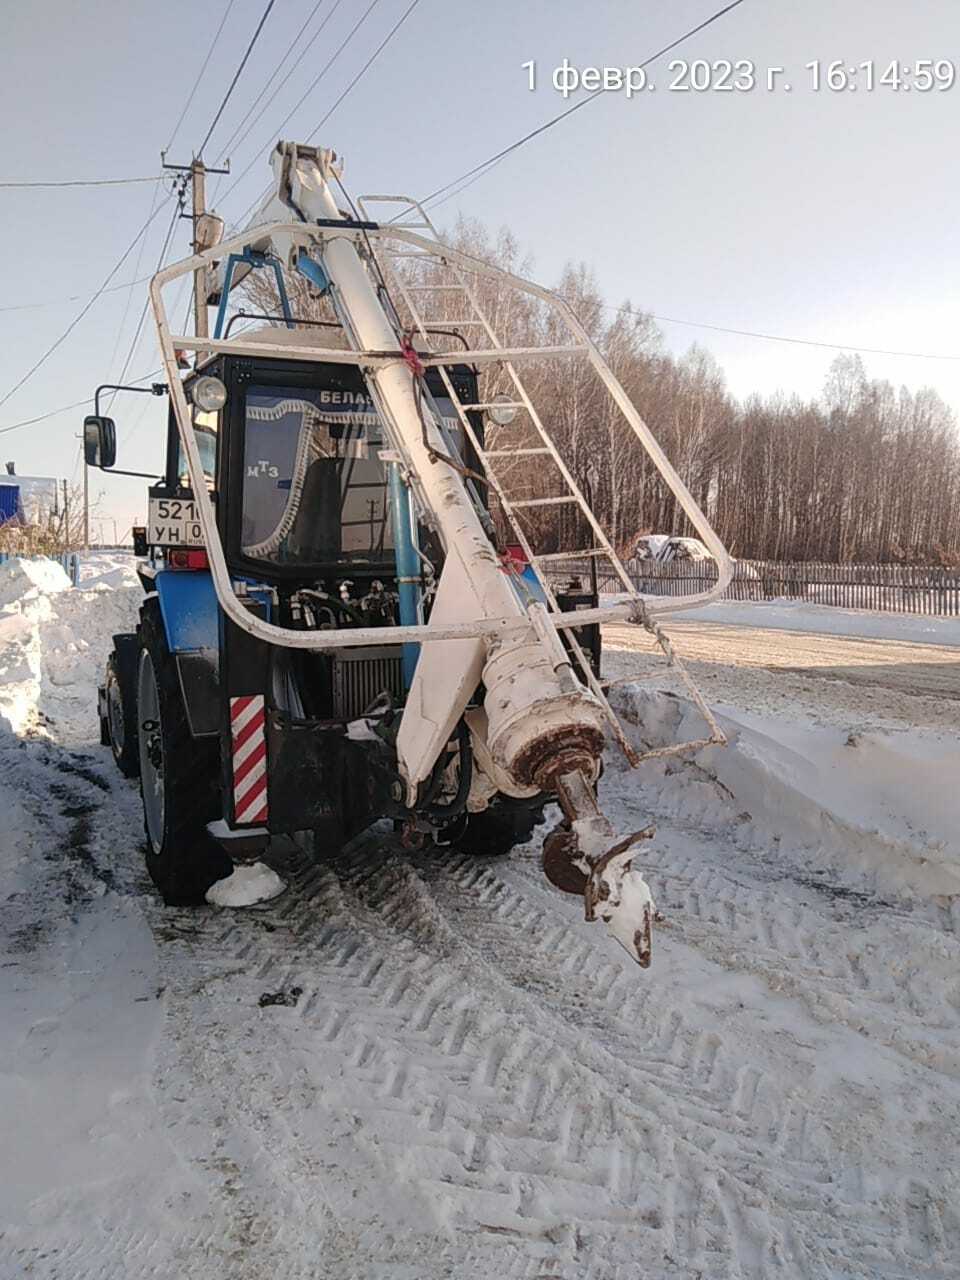 В Балтачевском районе продолжается операция “Снегоход”